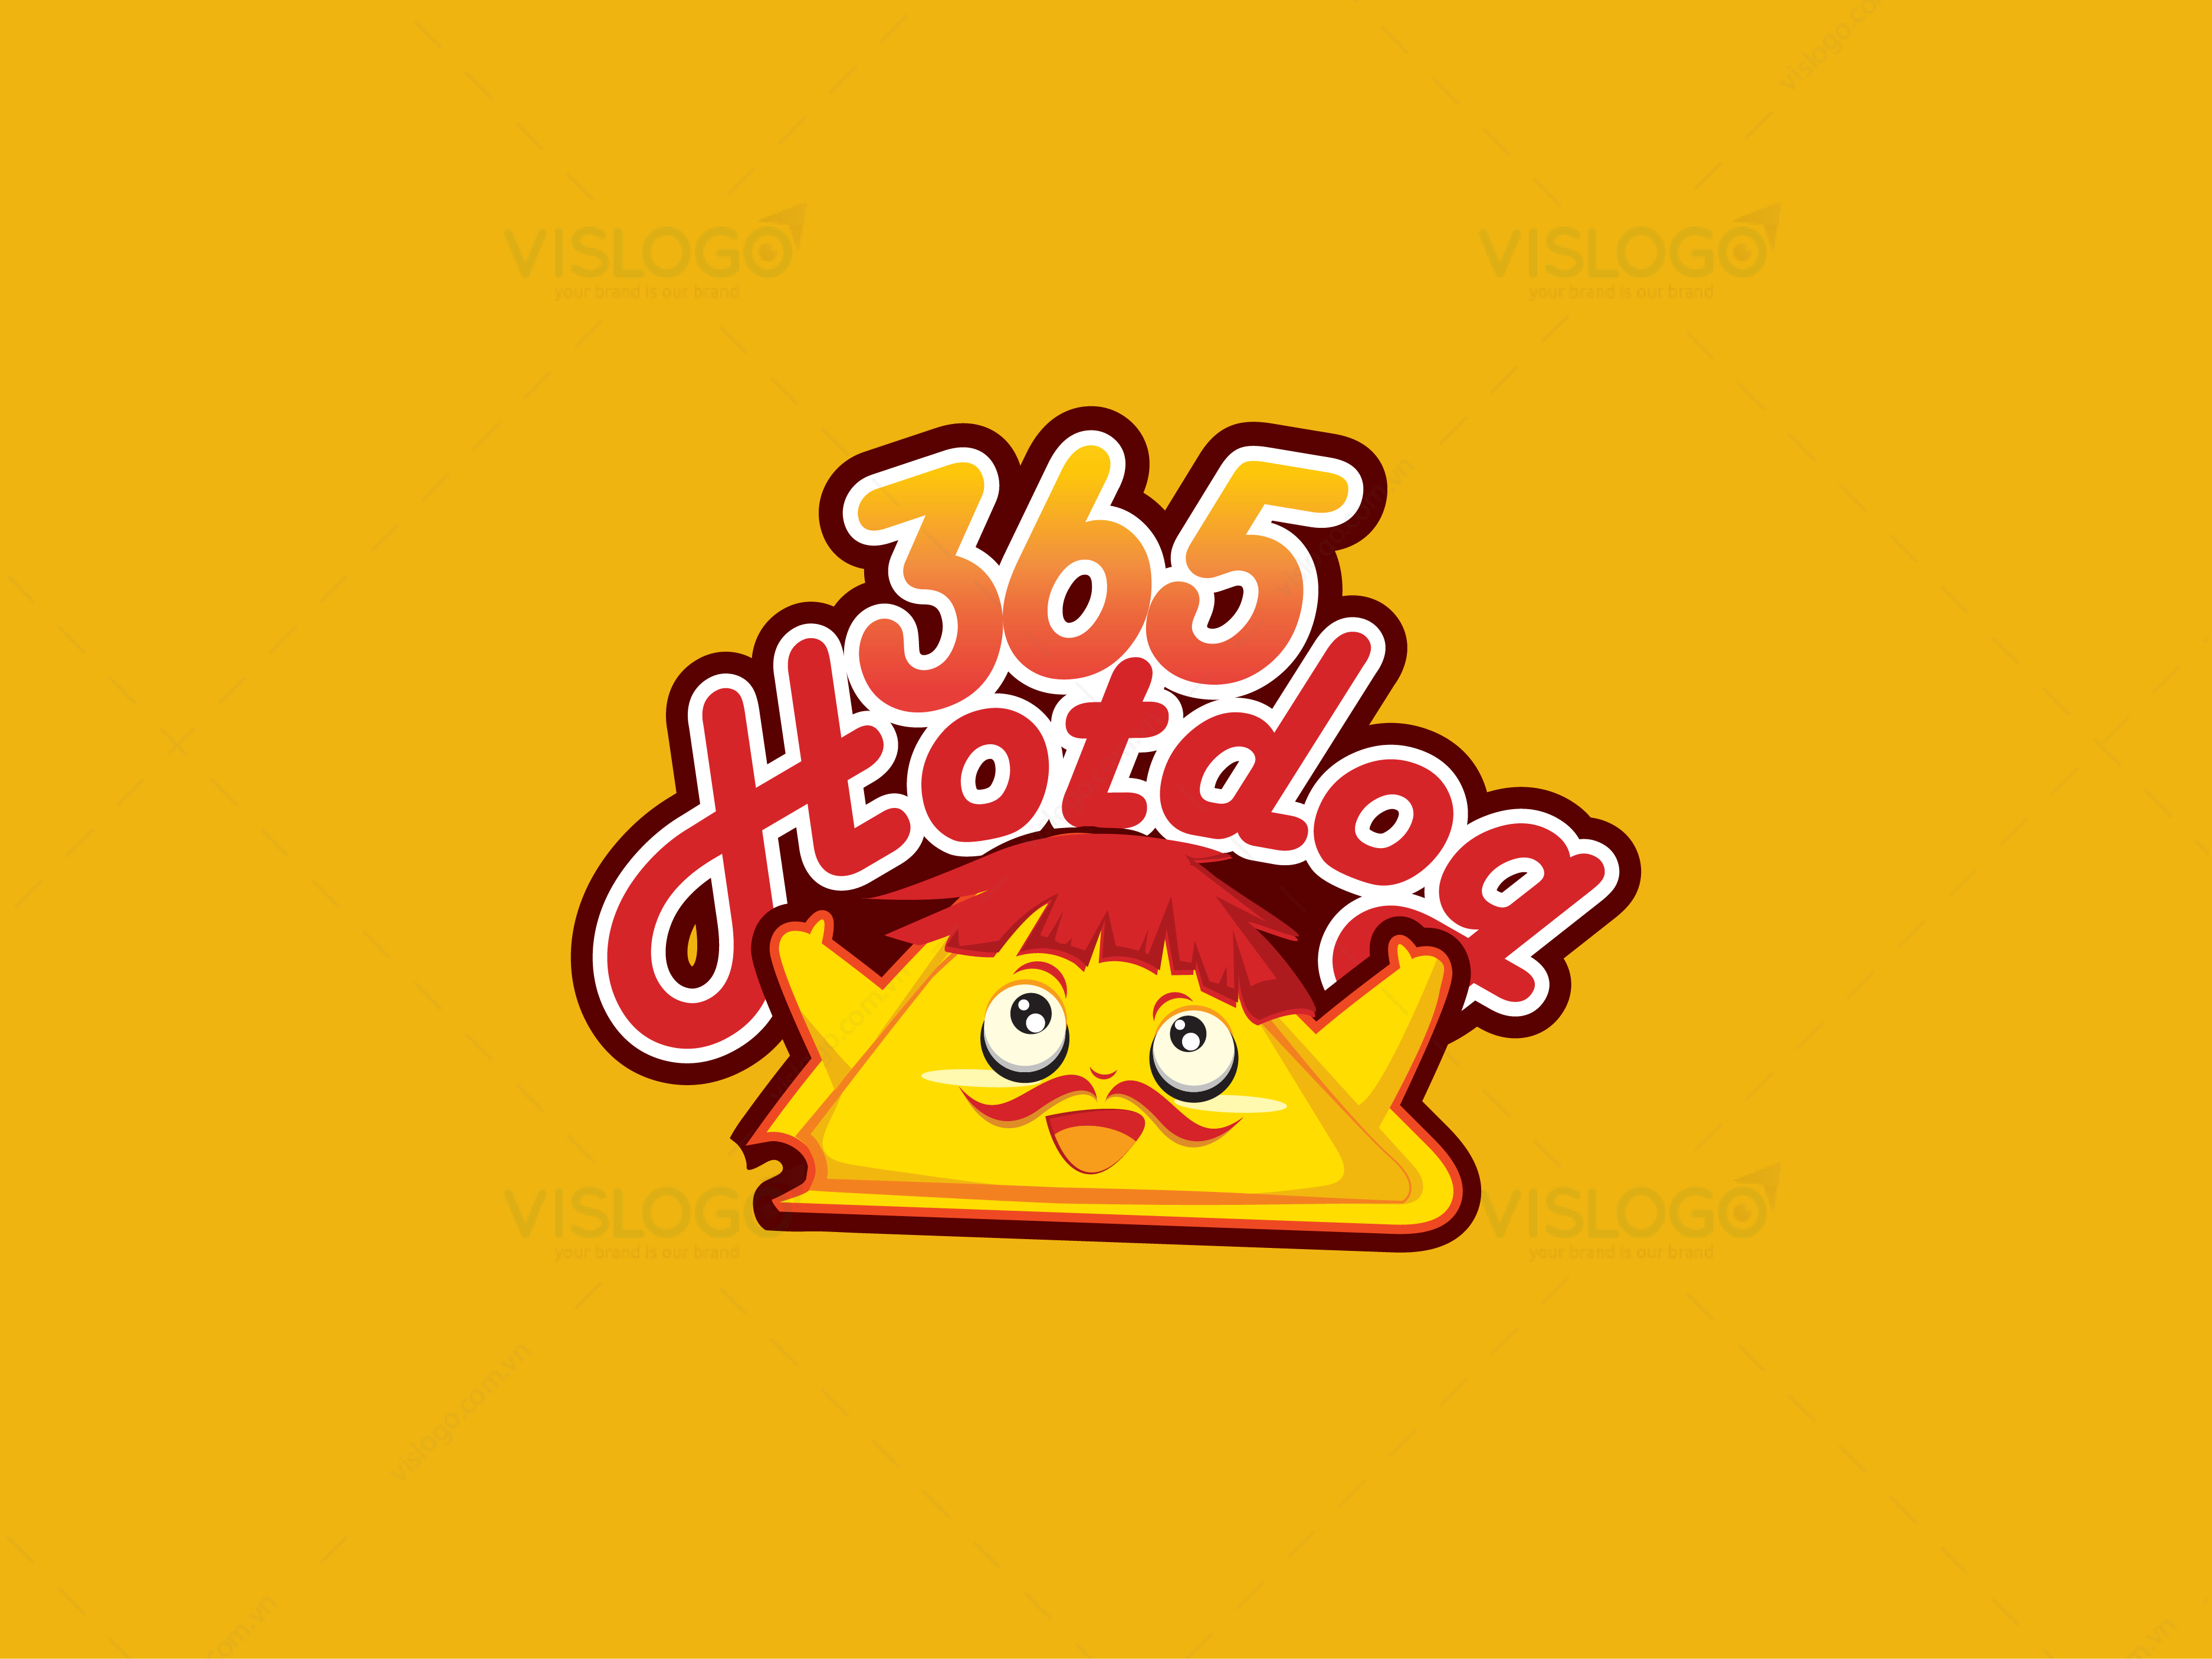 Thiết kế logo - Thương hiệu Hotdog 365